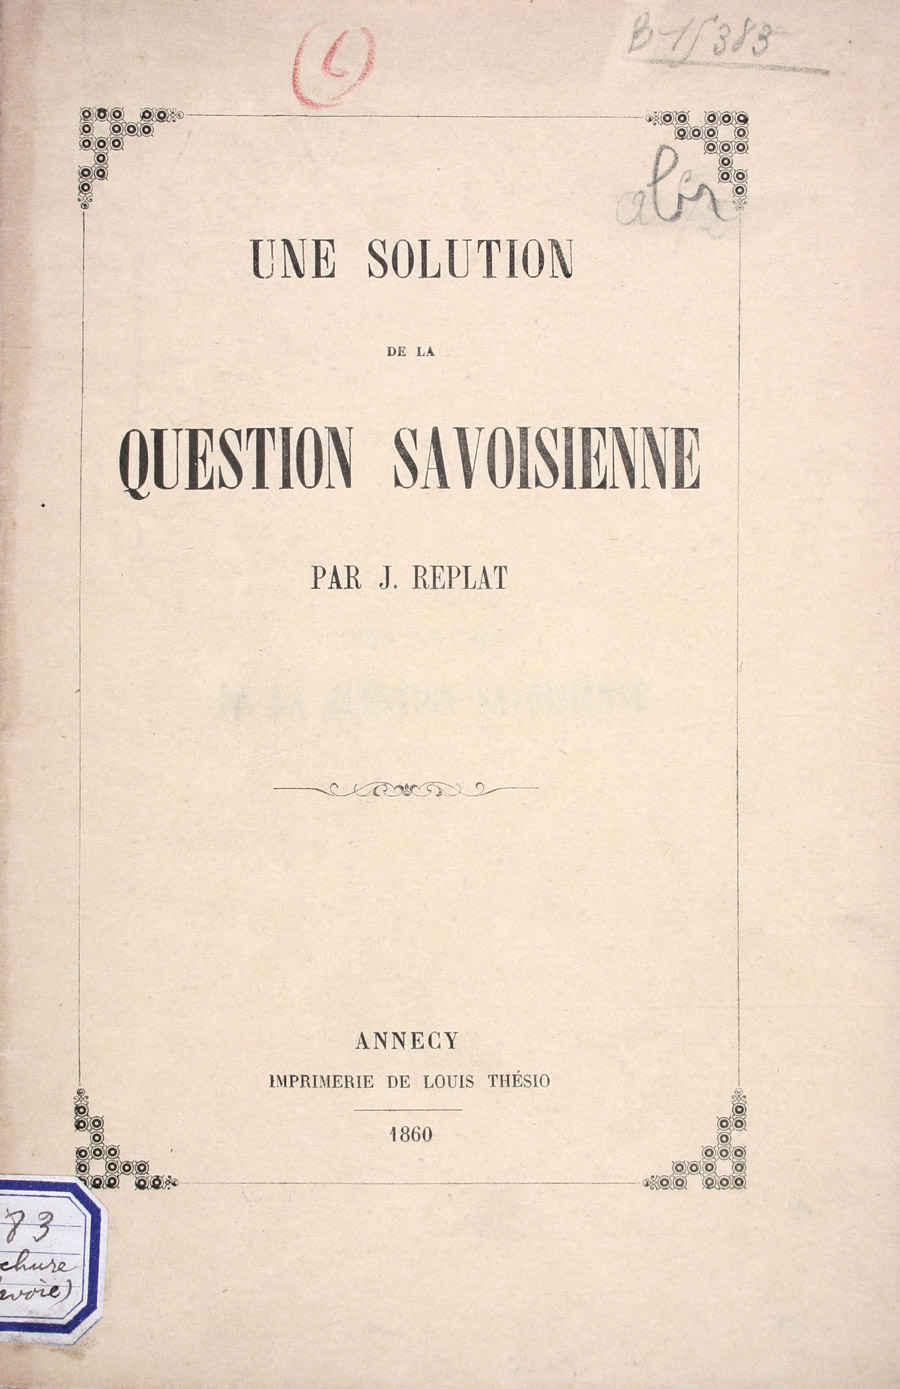 Une solution de la question savoisienne de J. Replat, 1860